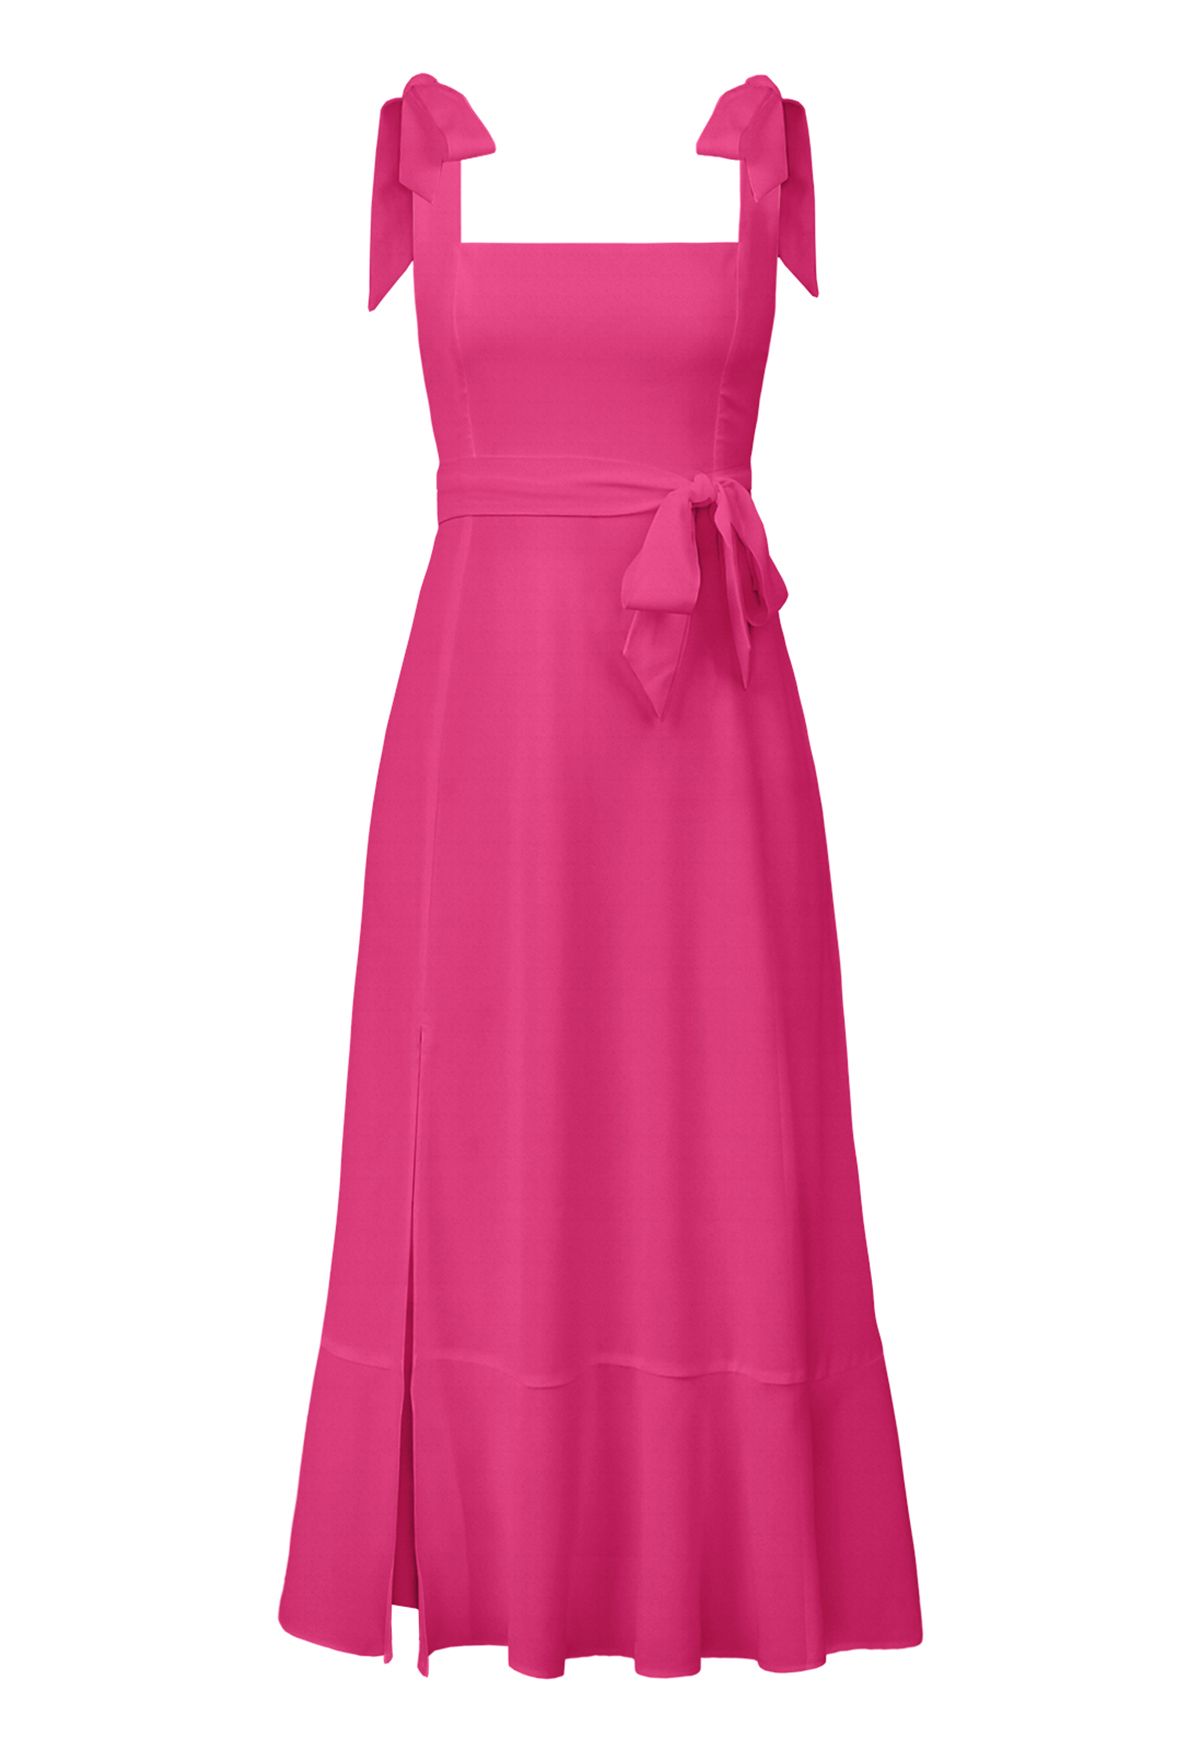 Cami-Kleid mit Rüschensaum und Schnürung an den Schultern in Pink